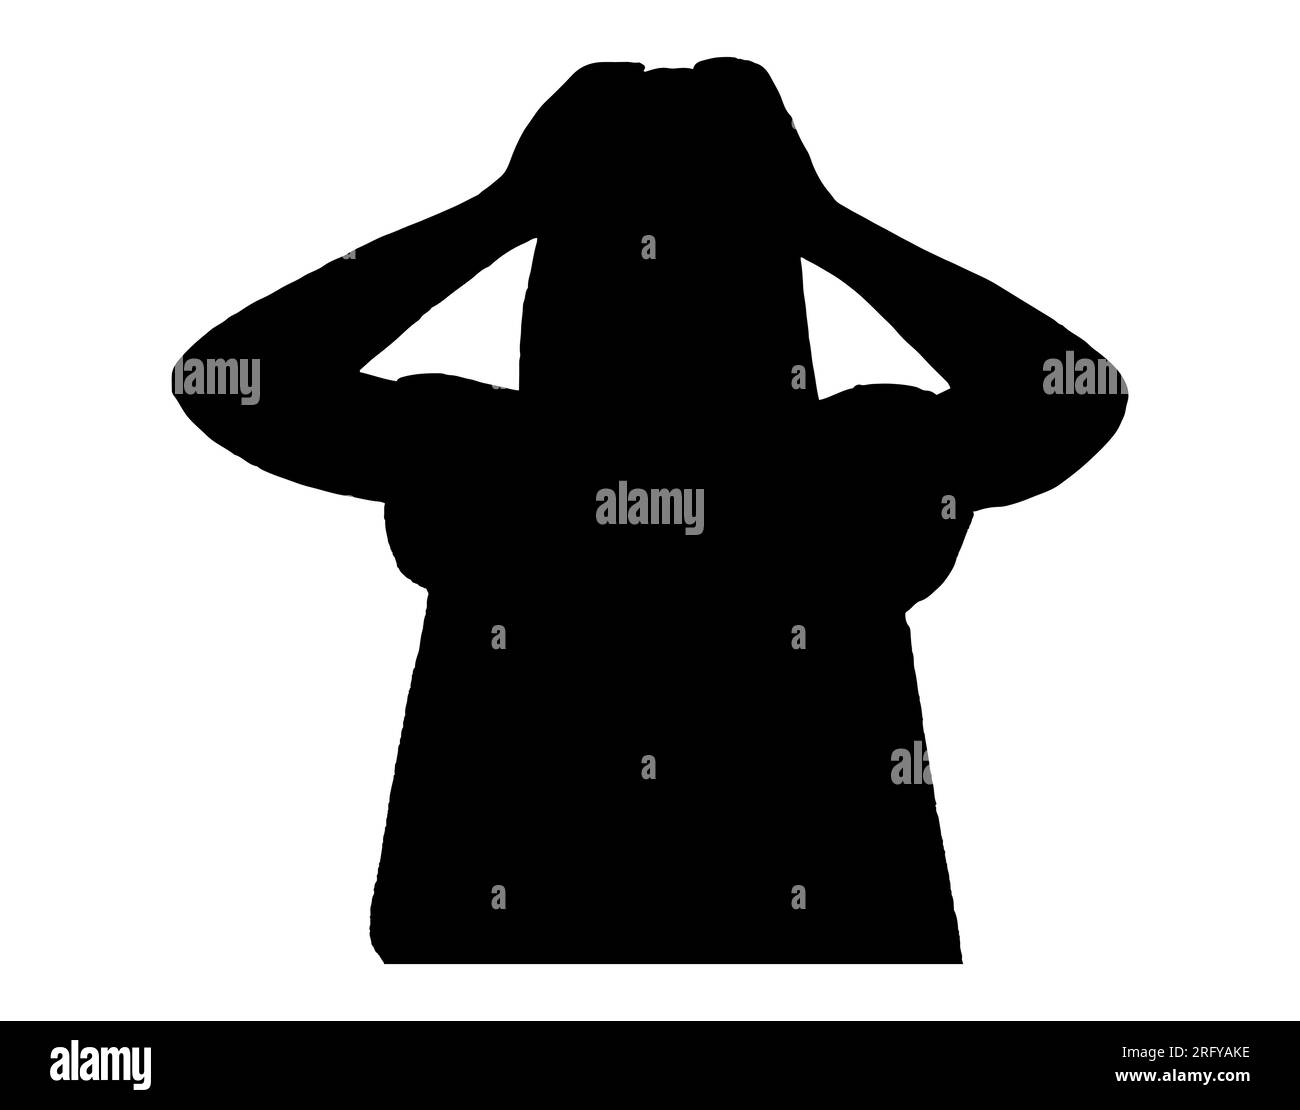 Silhouette noire d'une femme frustrée, un homme ayant des crises de panique en raison de soins de santé mentale médiocres et d'anxiété, vecteur isolé sur fond blanc Illustration de Vecteur